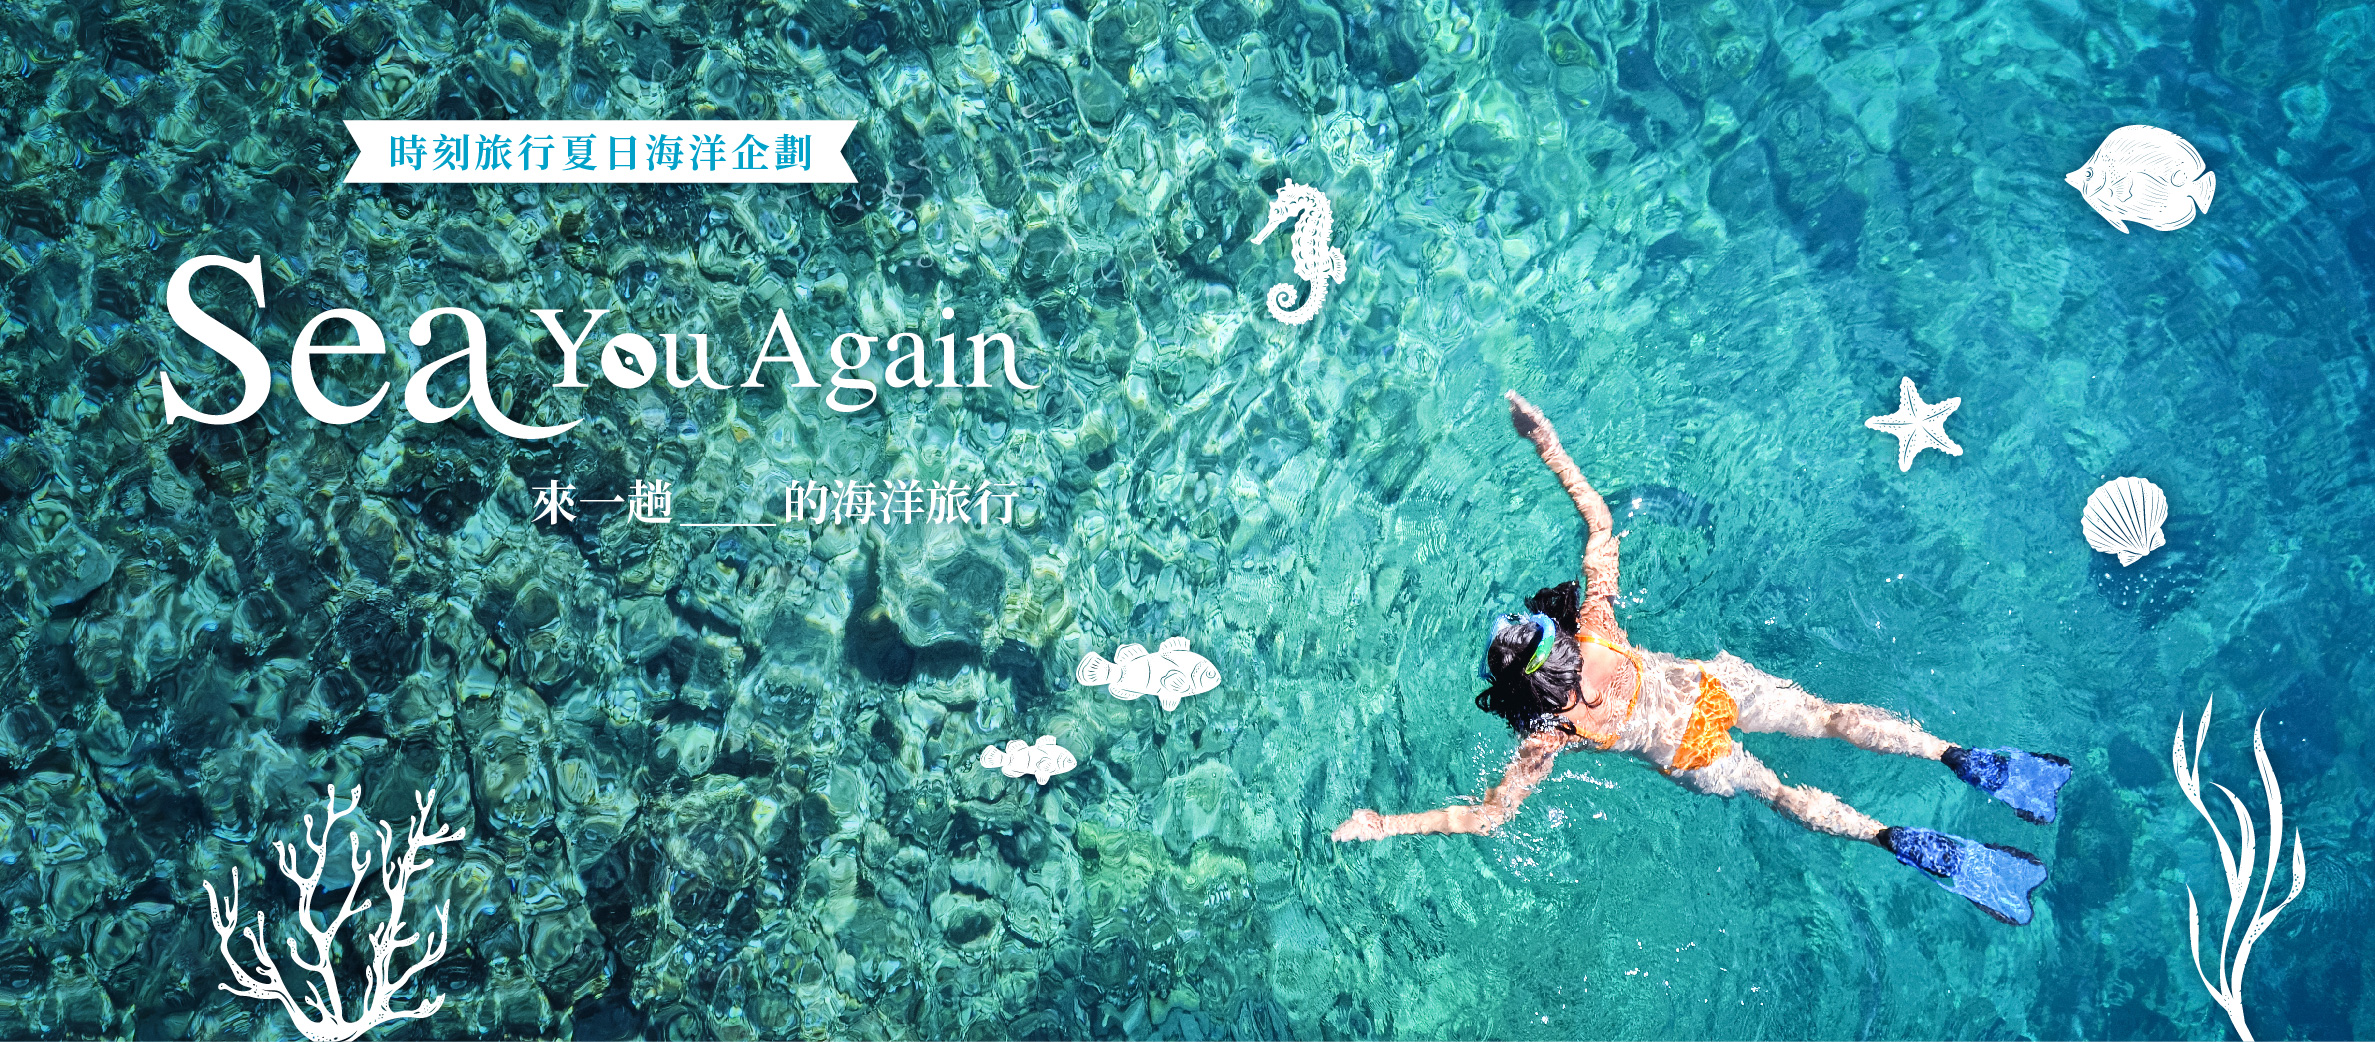 2019 時刻旅行夏日海洋企劃「Sea You Again」，來一趟____的海洋旅行